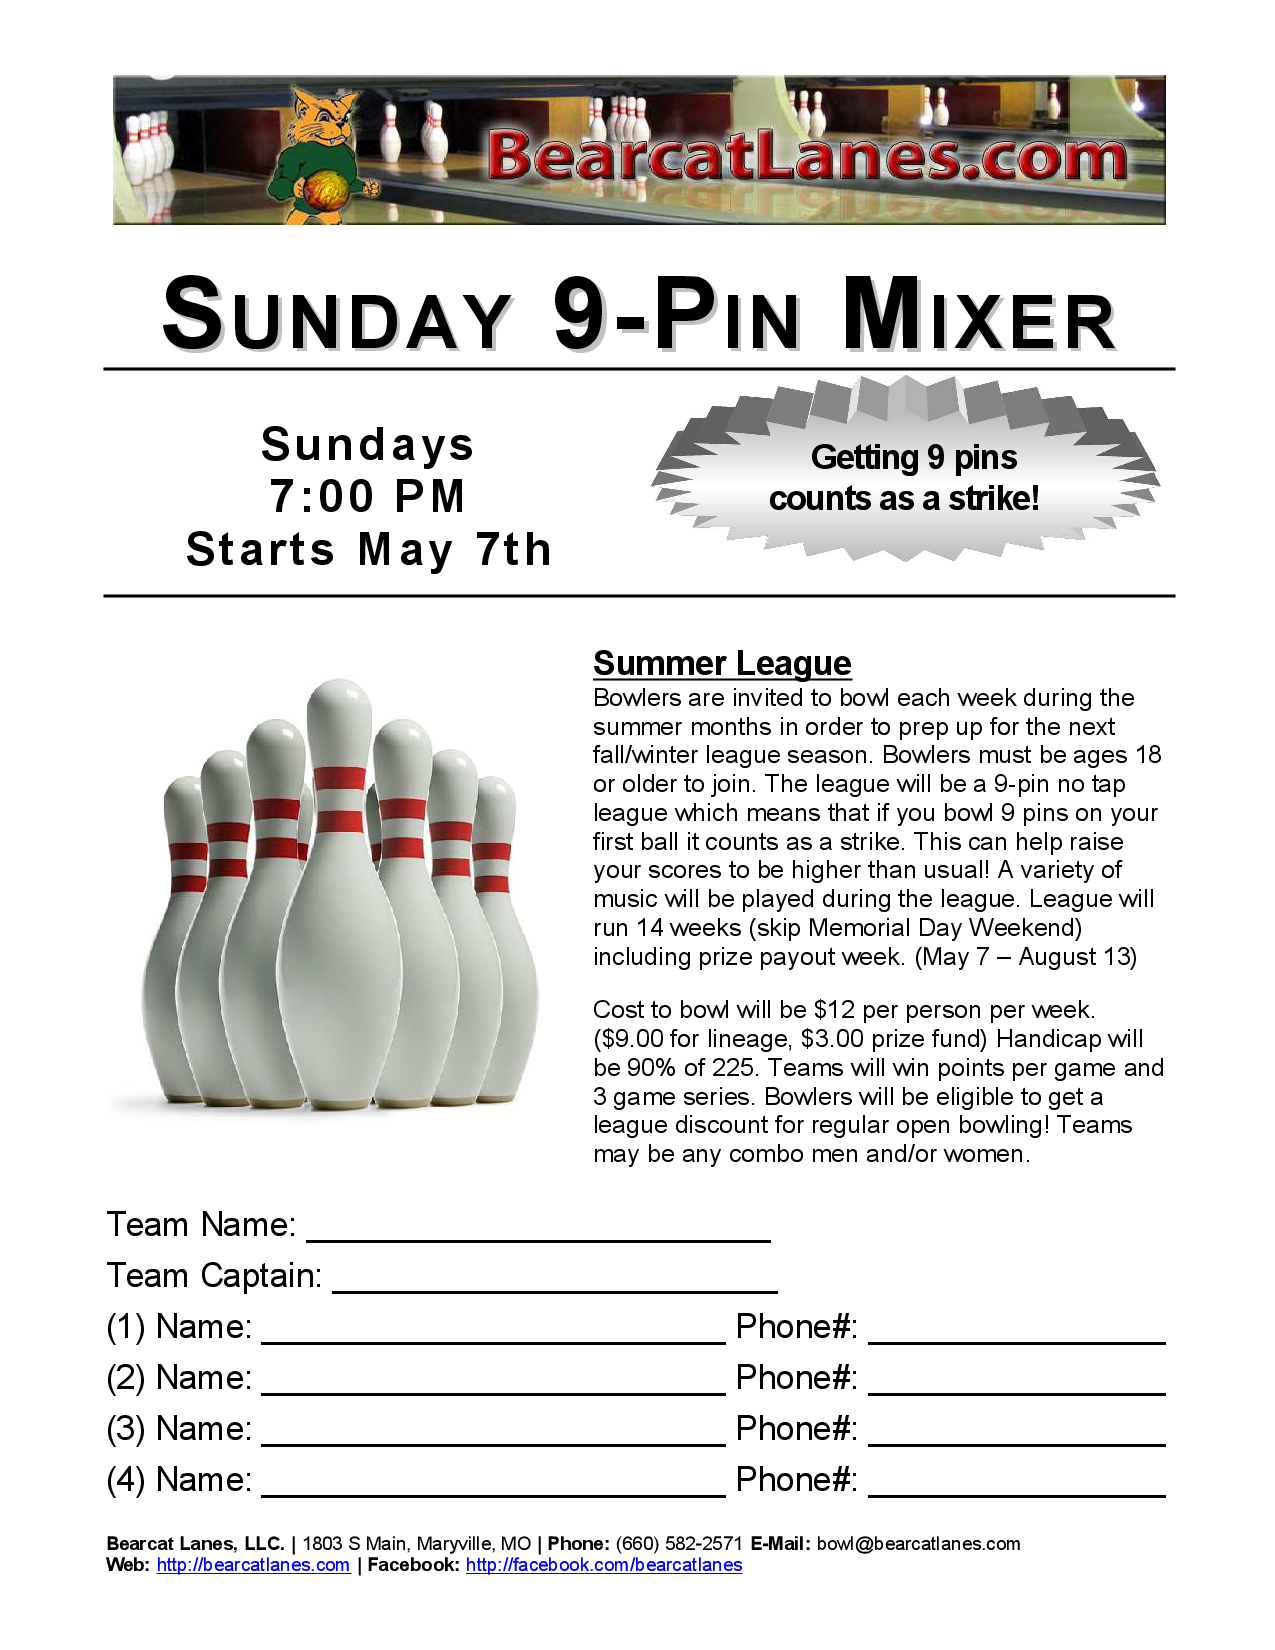 Sunday 9-Pin Mixer (Summer League)